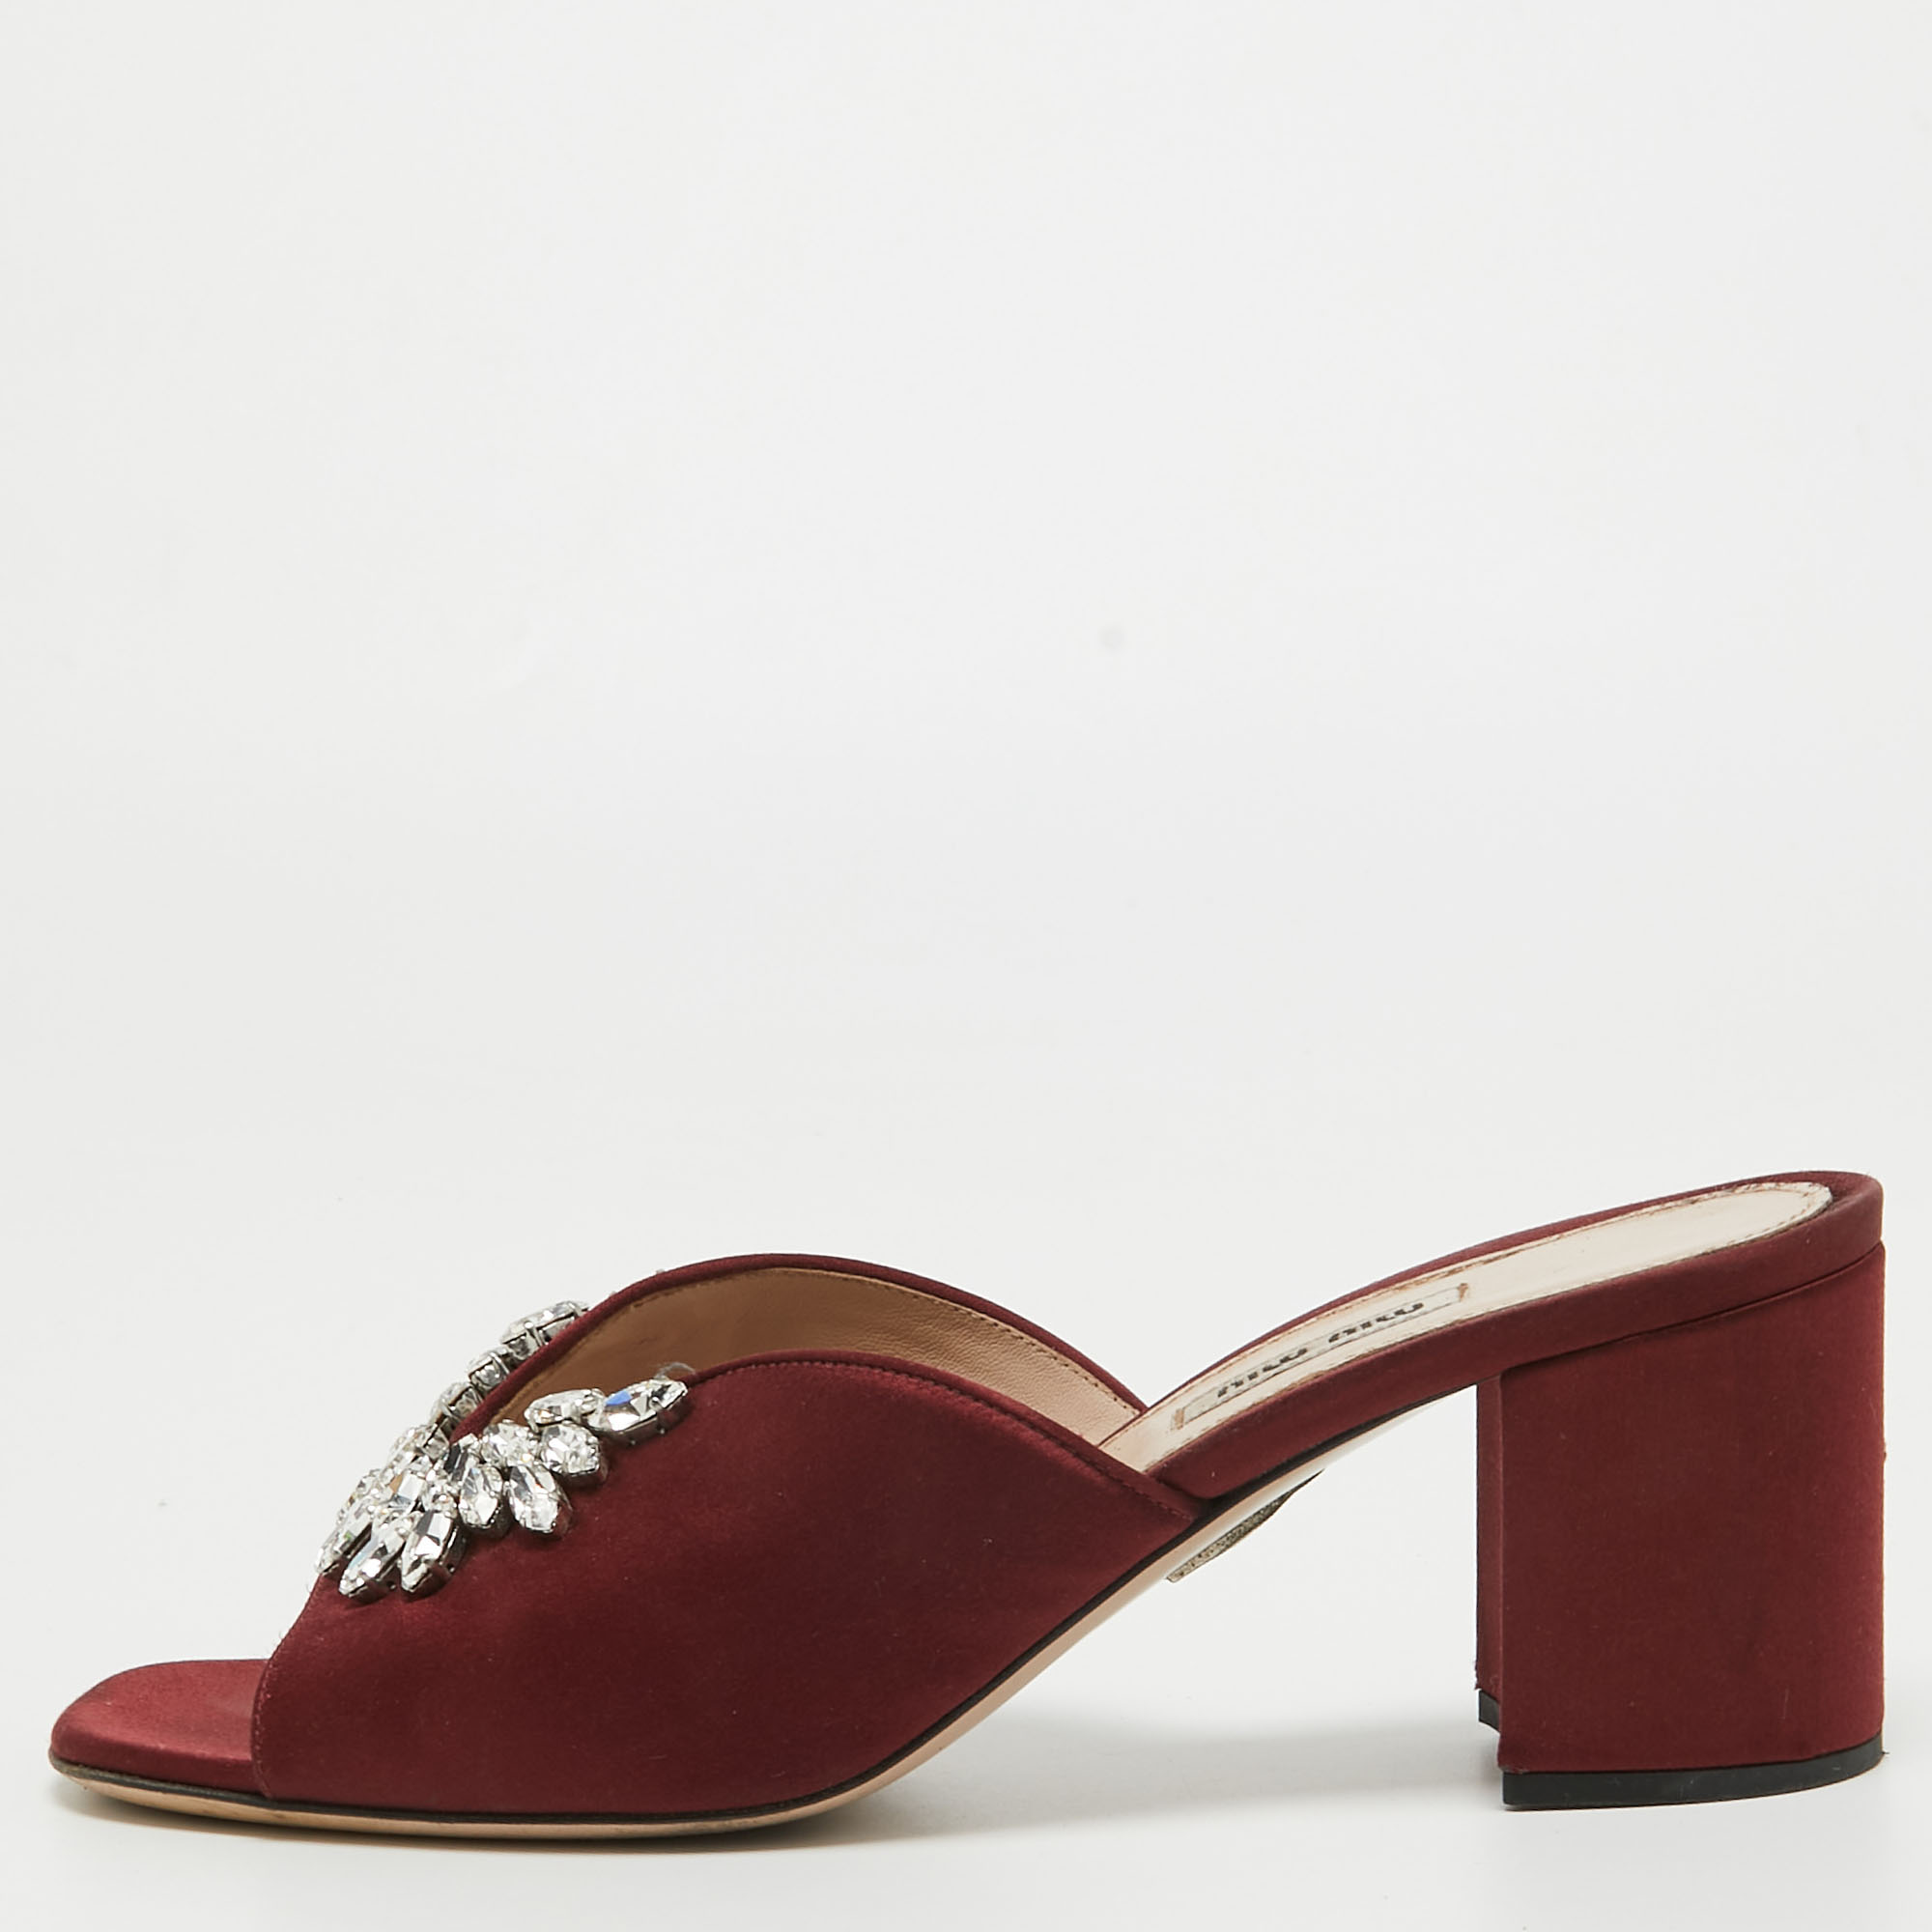 Pre-owned Miu Miu Burgundy Satin Crystal Embellished Slide Sandals Size 41